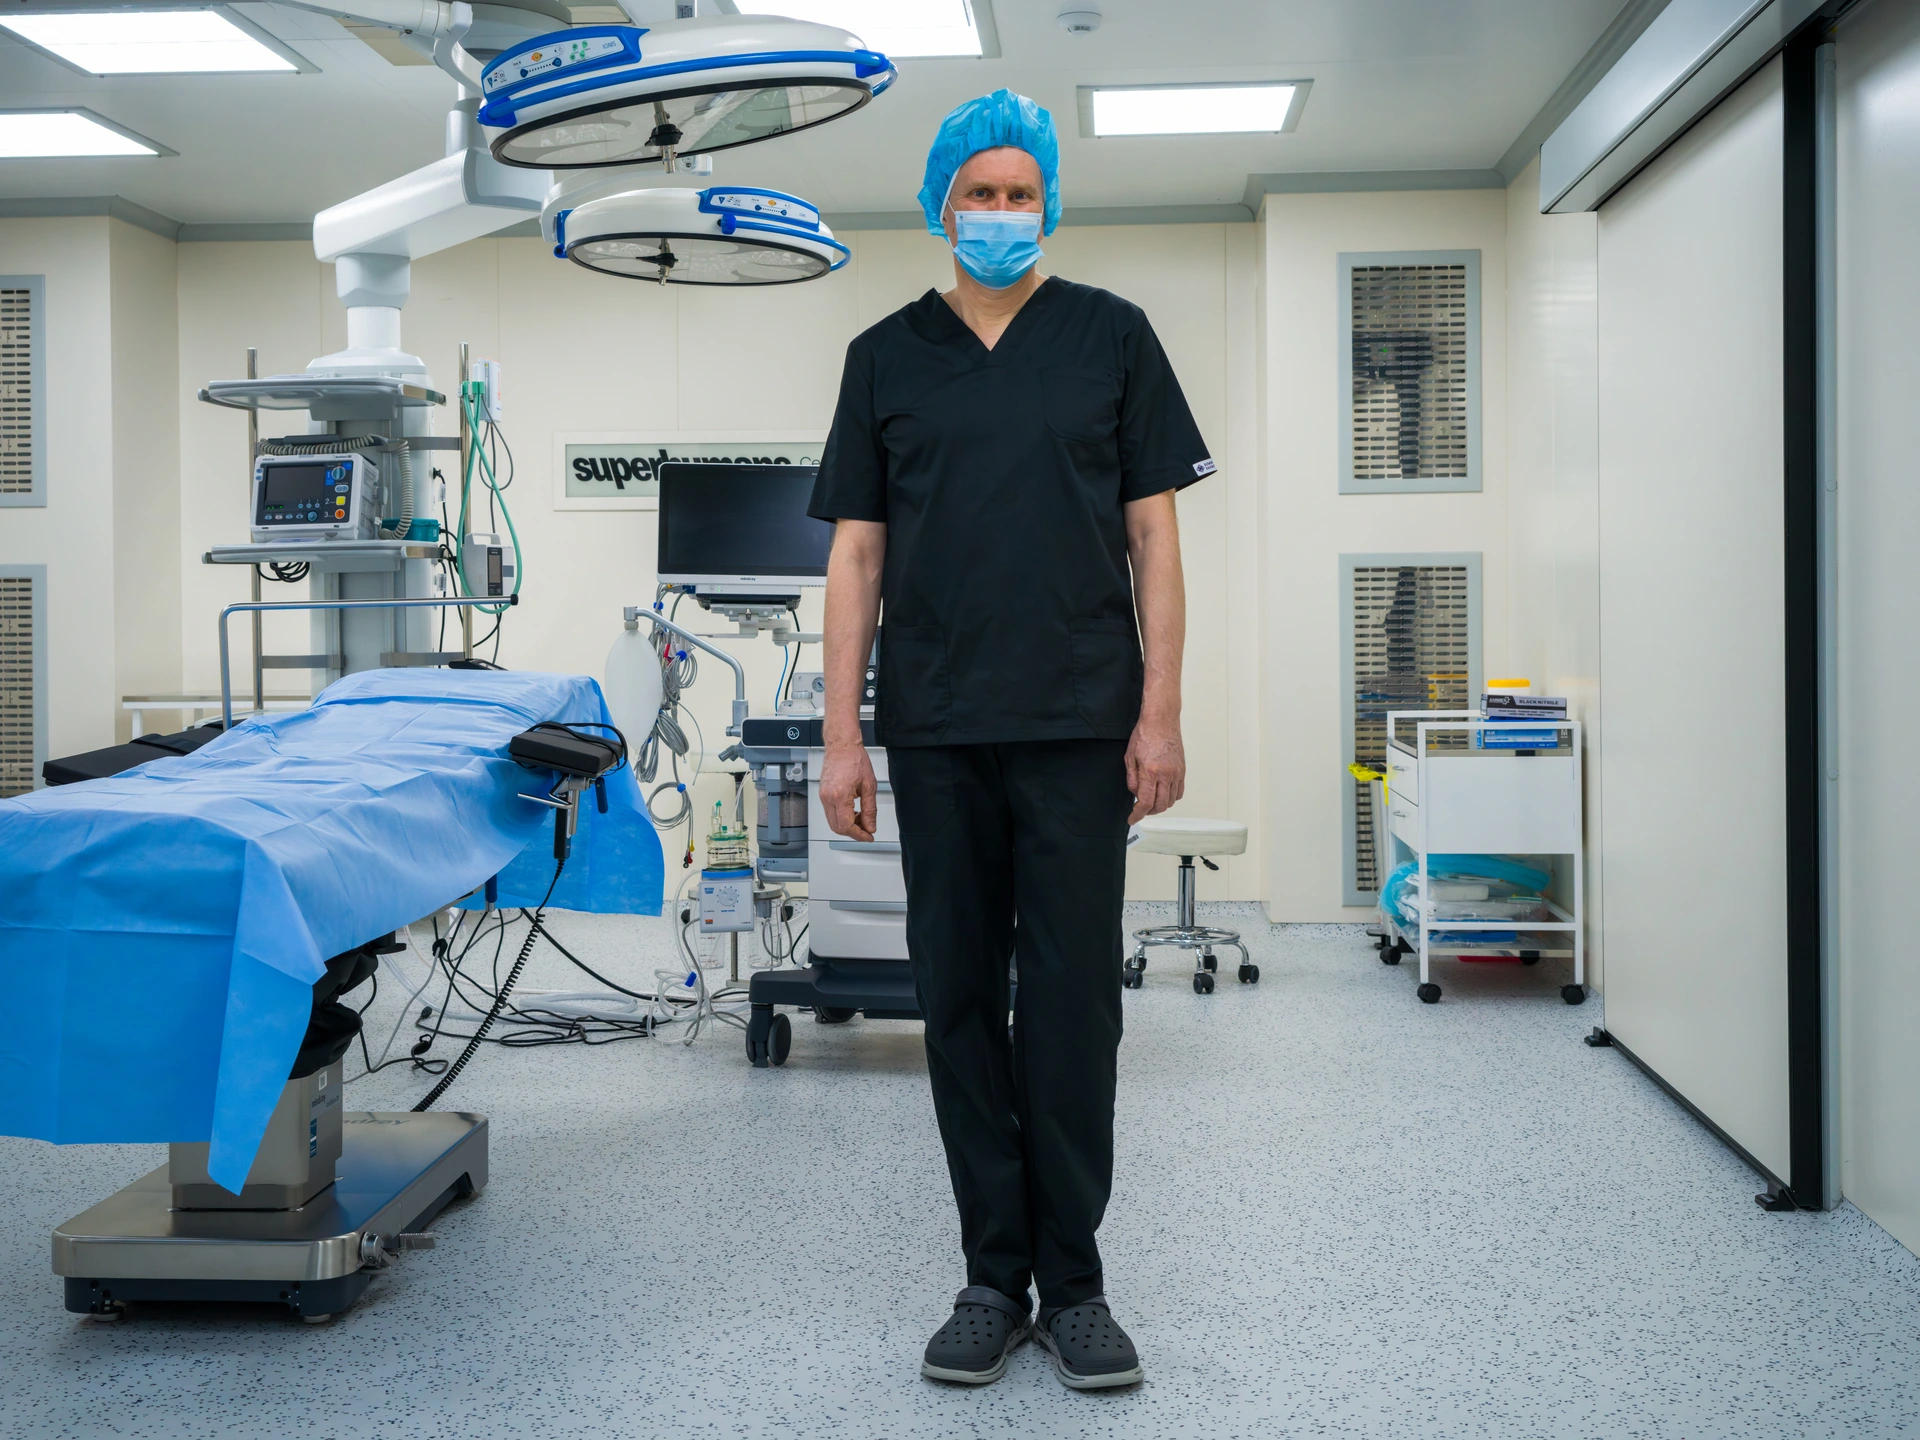 Чоловік стоїть у яскраво освітленій операційній, він дивиться прямо в камеру. Праворуч від нього розташований операційний стіл, а на задньому плані – хірургічне обладнання та освітлювальна стійка. На ньому світло-блакитна хірургічна шапочка і маска, темно-синя медична форма і темно-сині полімерні напівчеревики. Це Андрій Віленський, медичний директор Центру Superhumans – шпиталю у Львові на Заході Україні, яка забезпечує кваліфіковане протезування та реабілітаційне лікування українців, поранених під час повномасштабної російського вторгнення в Україну.